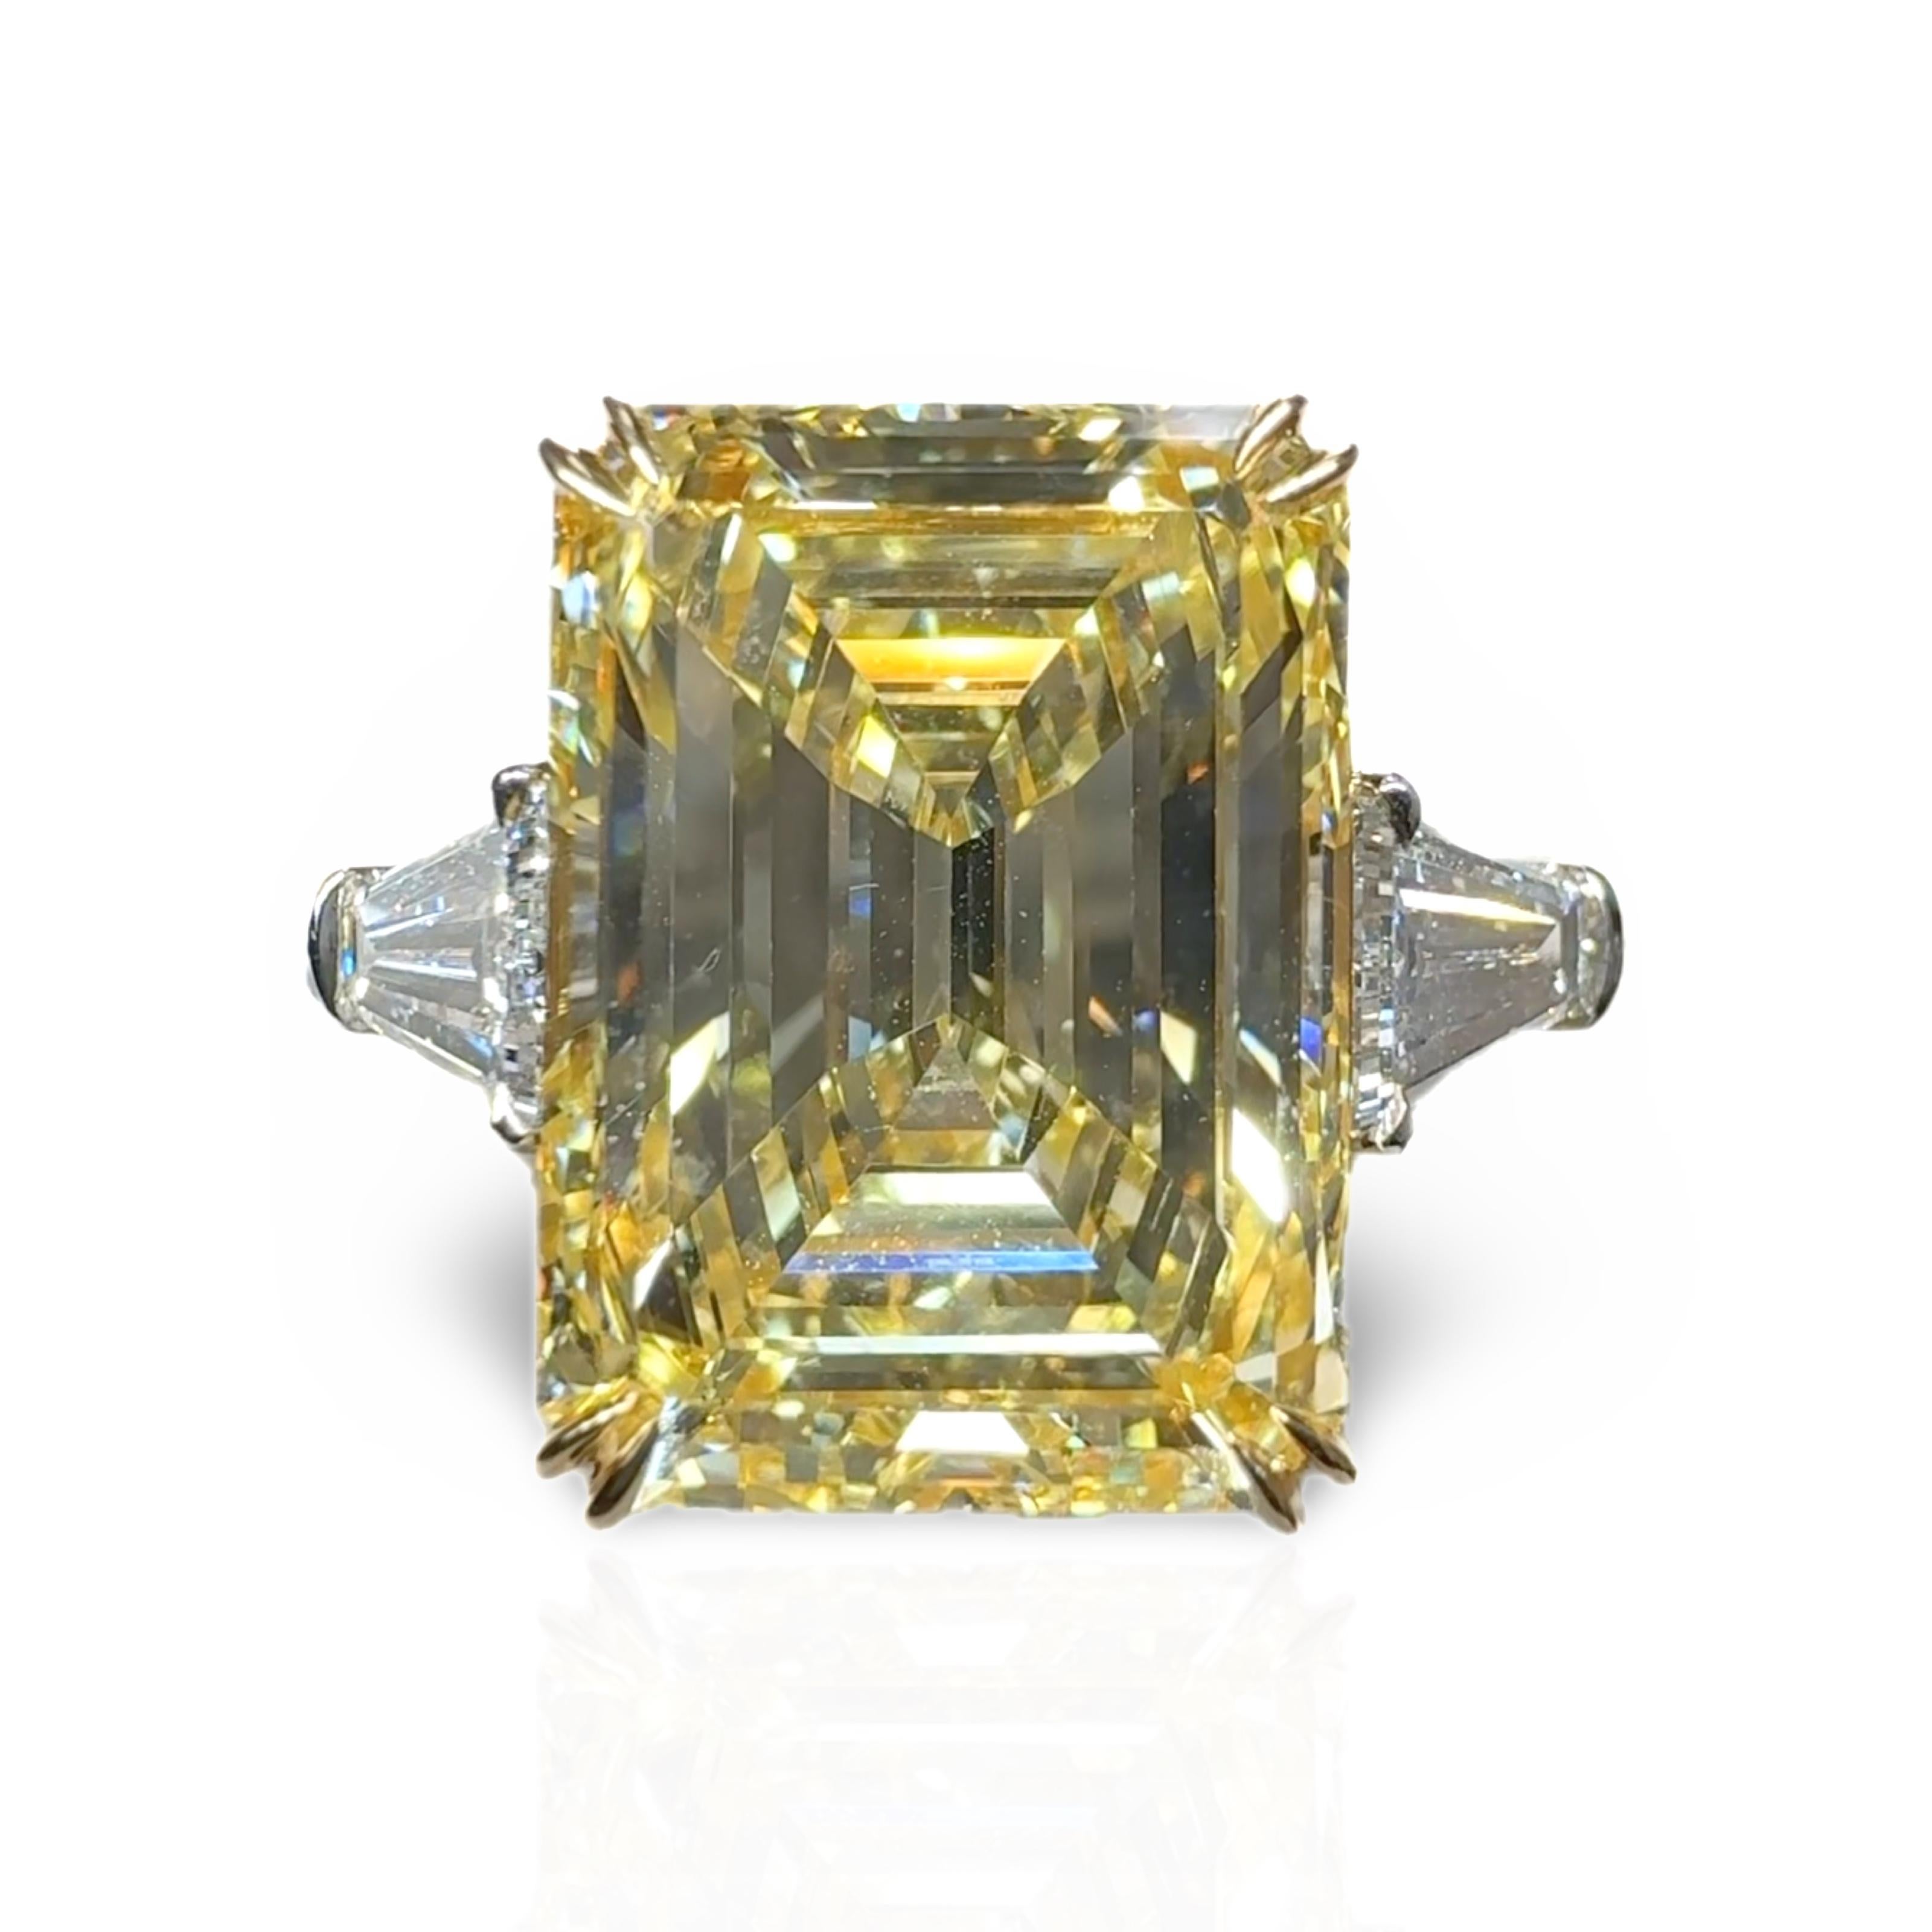 Cette bague à trois pierres met en valeur un diamant de taille émeraude de couleur naturelle jaune fantaisie impeccablement taillé. 
Les tailles émeraude sont l'une des tailles les plus rares parmi les diamants de couleur fantaisie, et elles sont